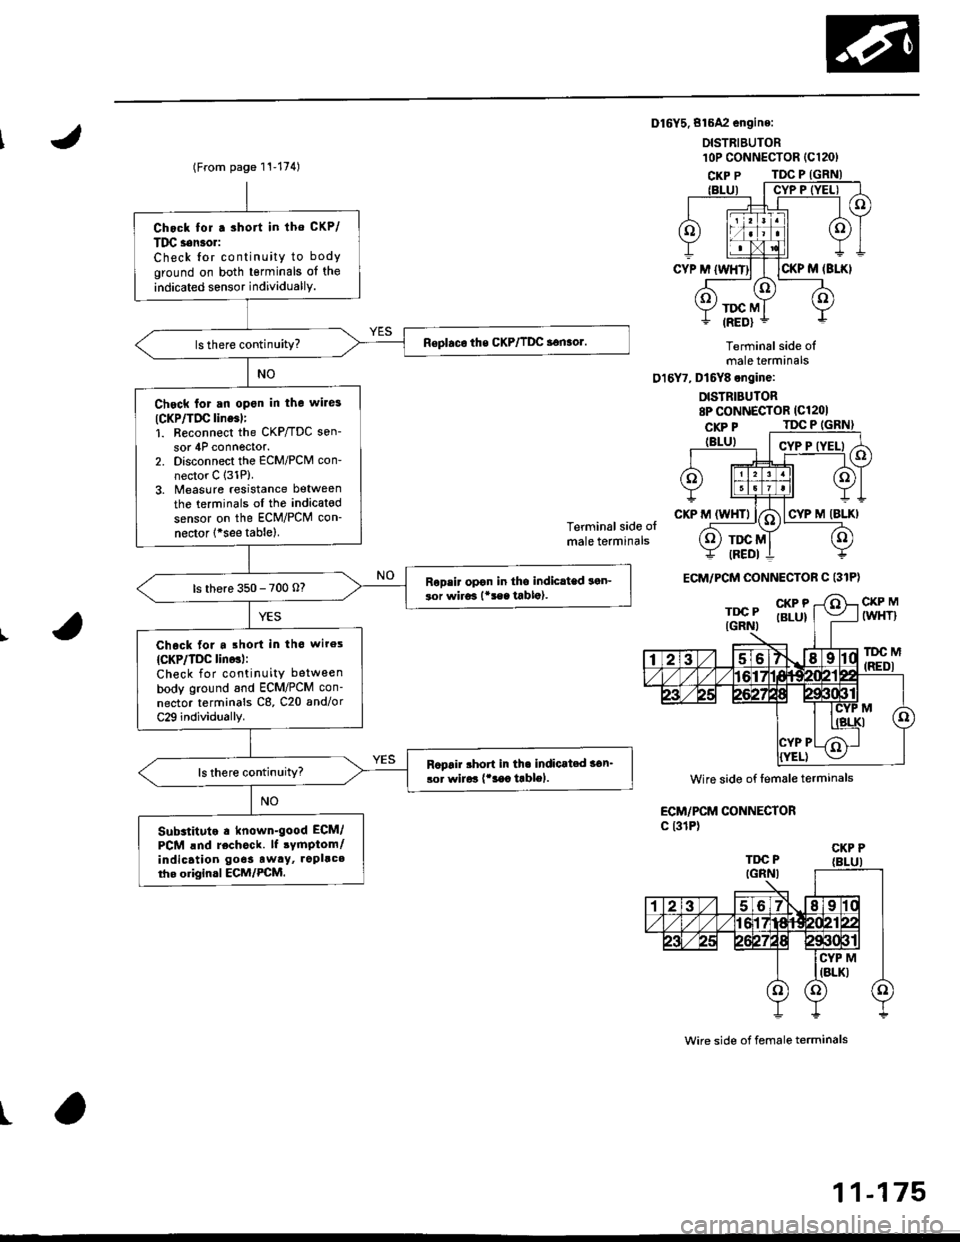 HONDA CIVIC 2000 6.G Workshop Manual Dl6Y5.816A2 engine:
DISTRIEUTOR
Terminal side olmale terminals
016Y7, Dt6Y8 engine:
DISTRIBUTOR8P CONNECTOR (Cl201
Terminal side olmale terminals
CKP MIWHT}
lDC M(REDI
ECM/PCM CONNECTORc l31P)
wire si